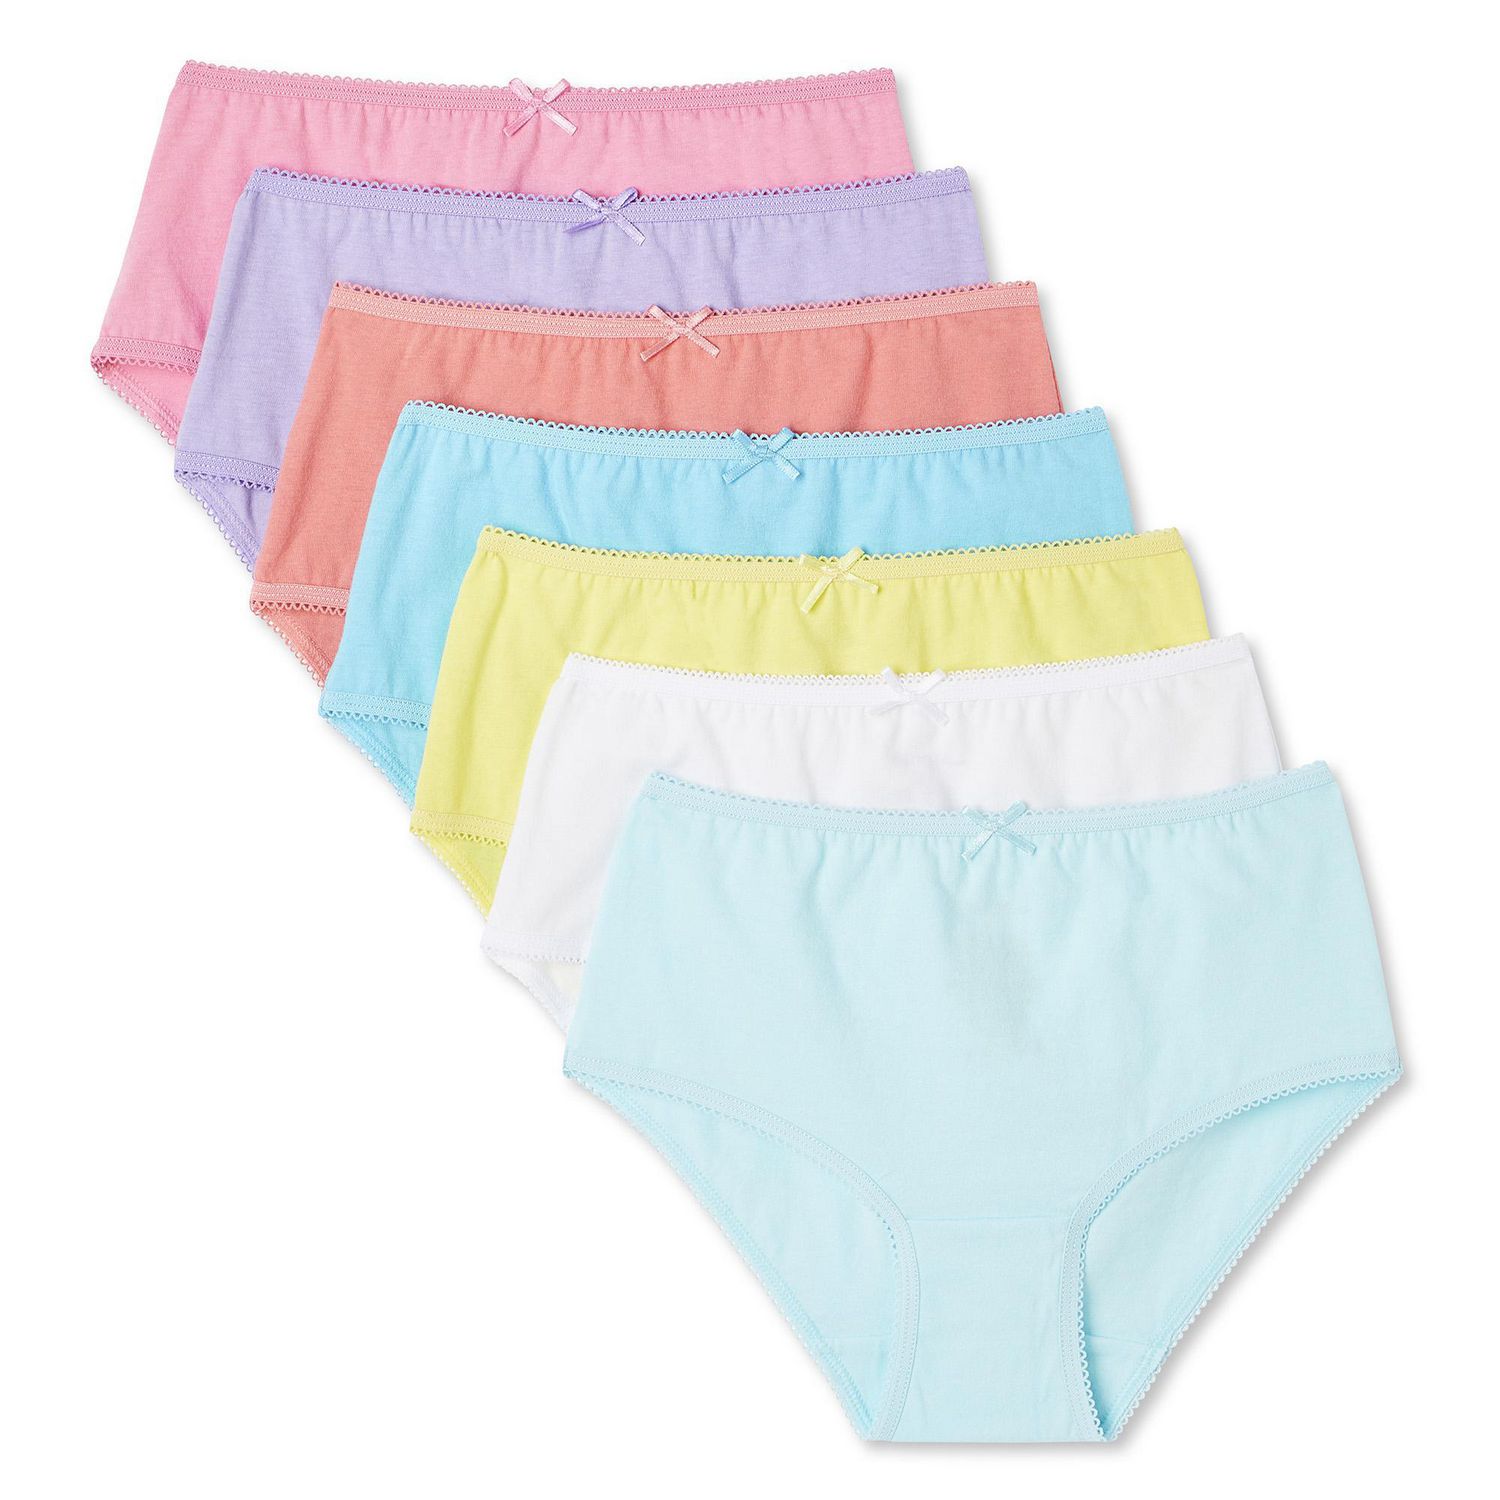 Fashion Underwear Girl 12 units / lot cotton underwear 2-10Y high quality Girl  underwear @ Best Price Online